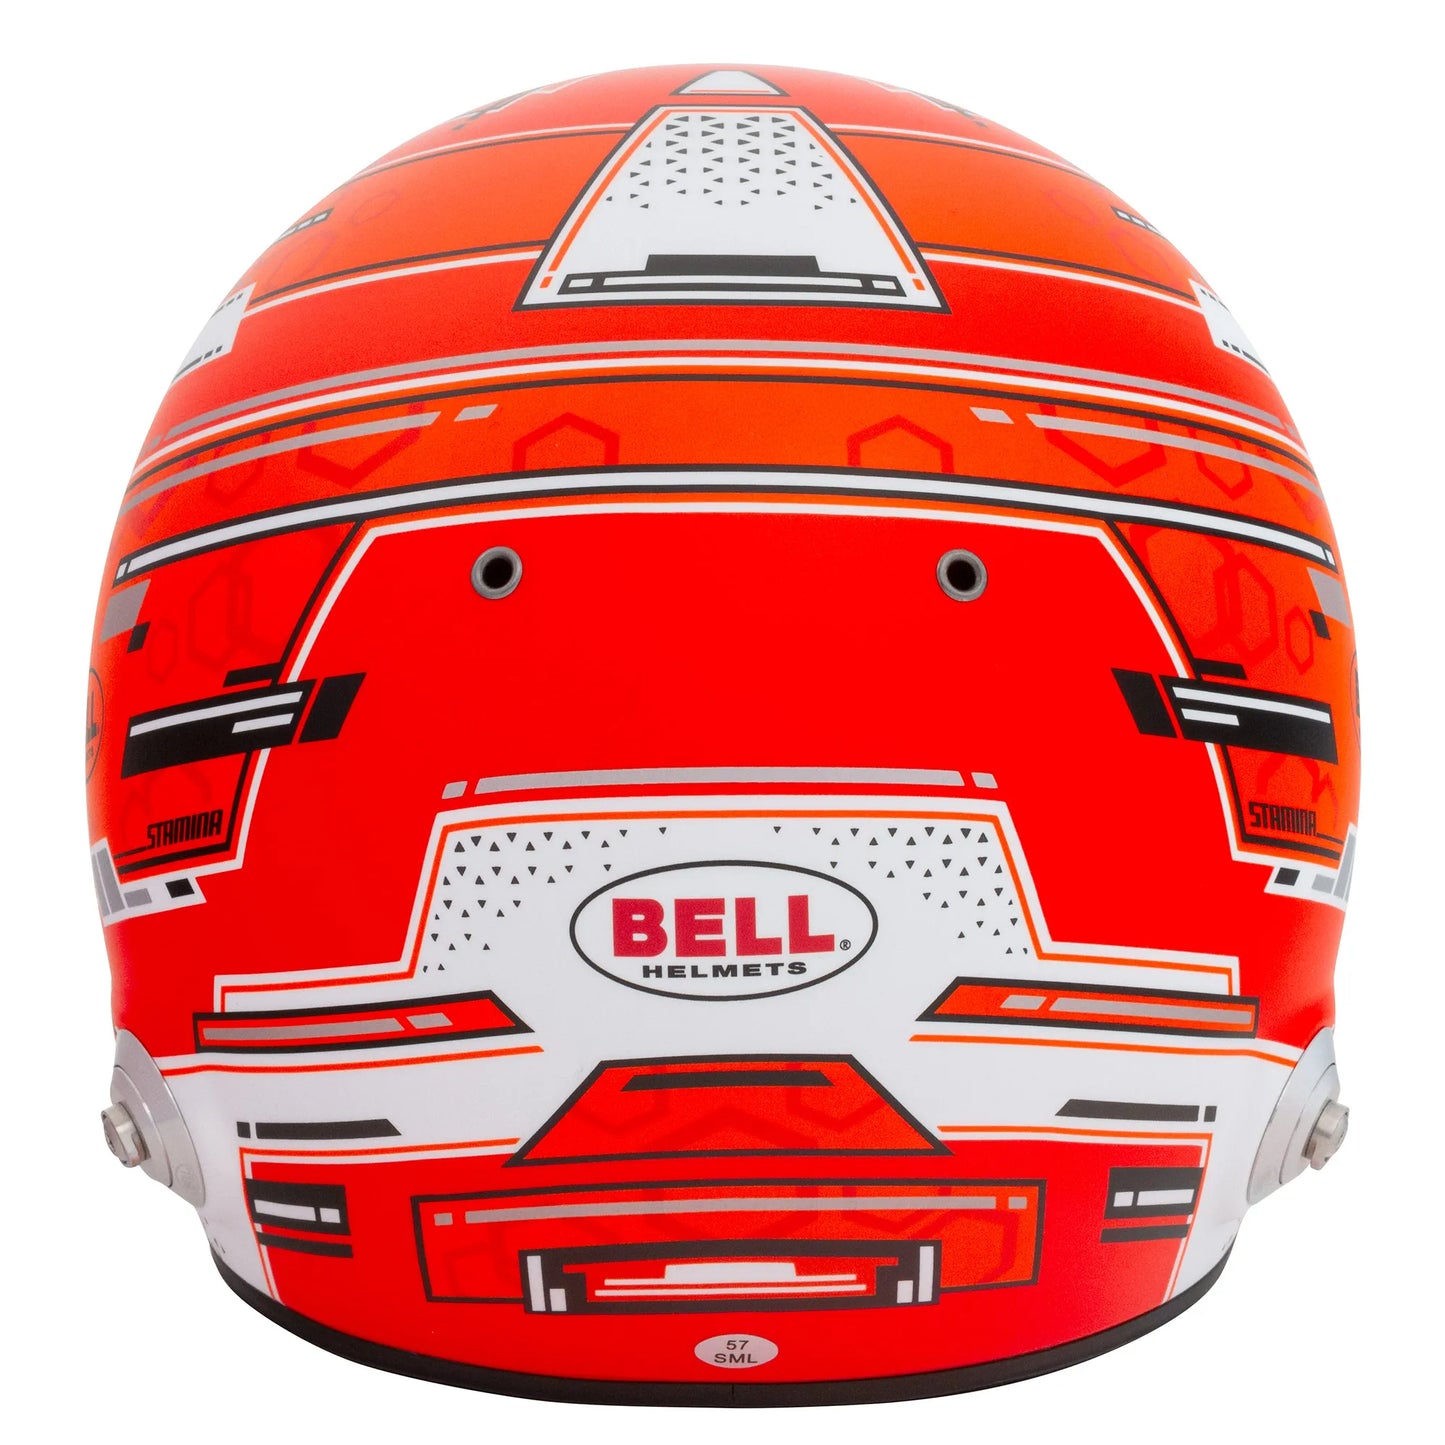 Rear view of bell racing helmet